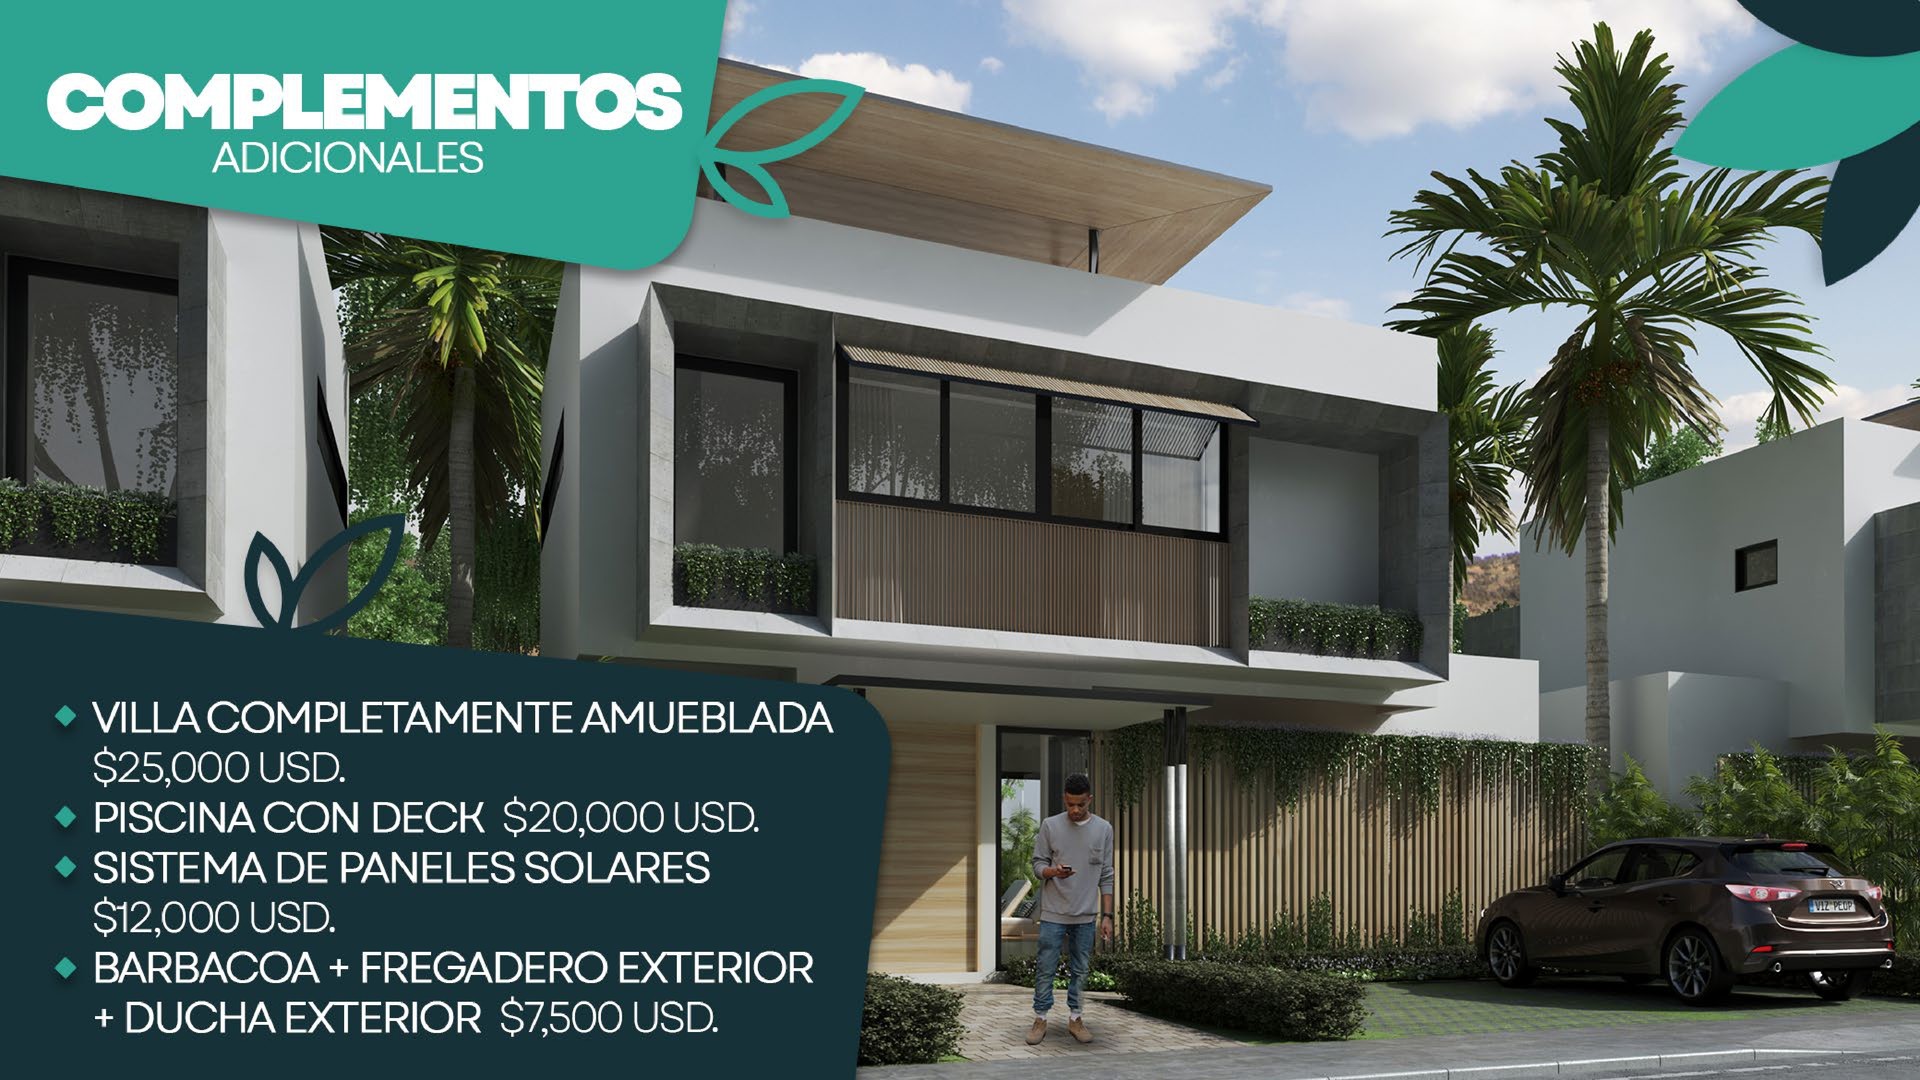 casas vacacionales y villas - Hermoso Proyecto En Construccion En Punta Cana, Villas De 2 Y 3 Hab.  3